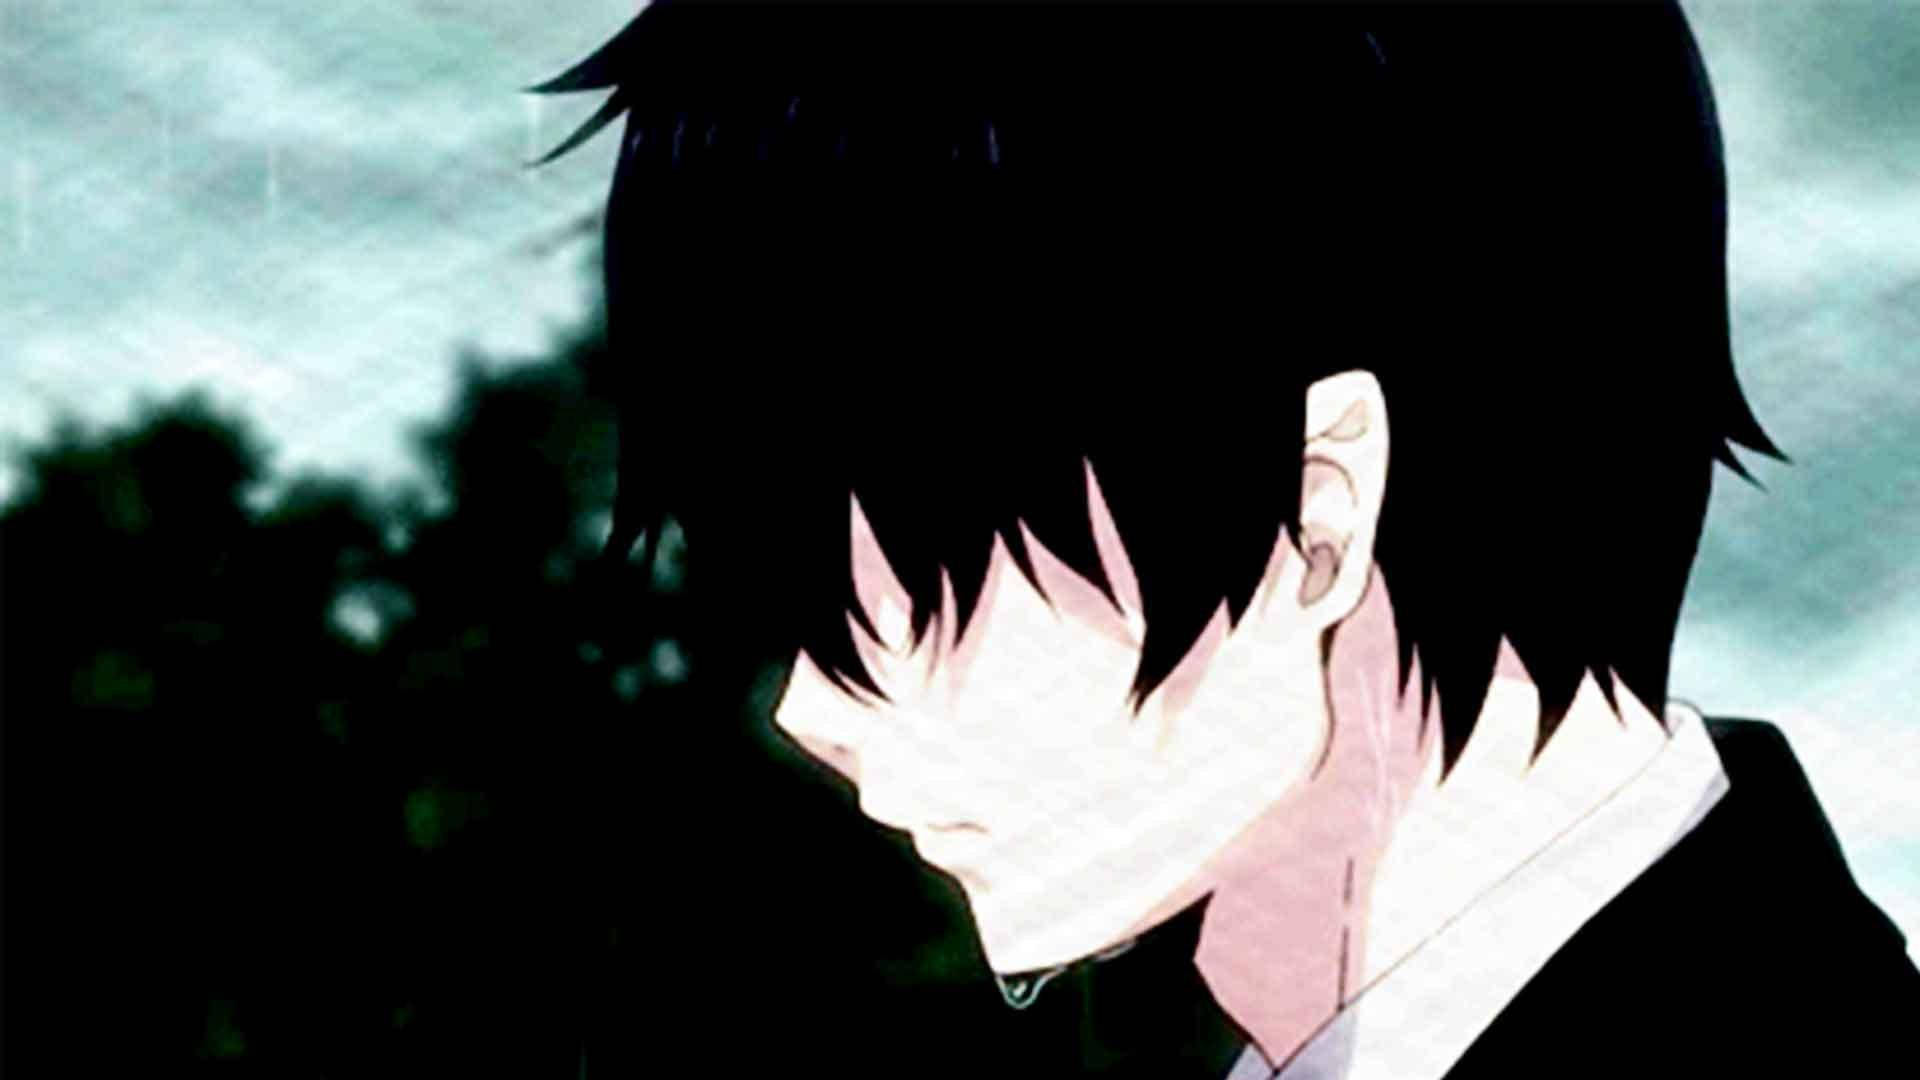 Sobbing Sad Anime Boy